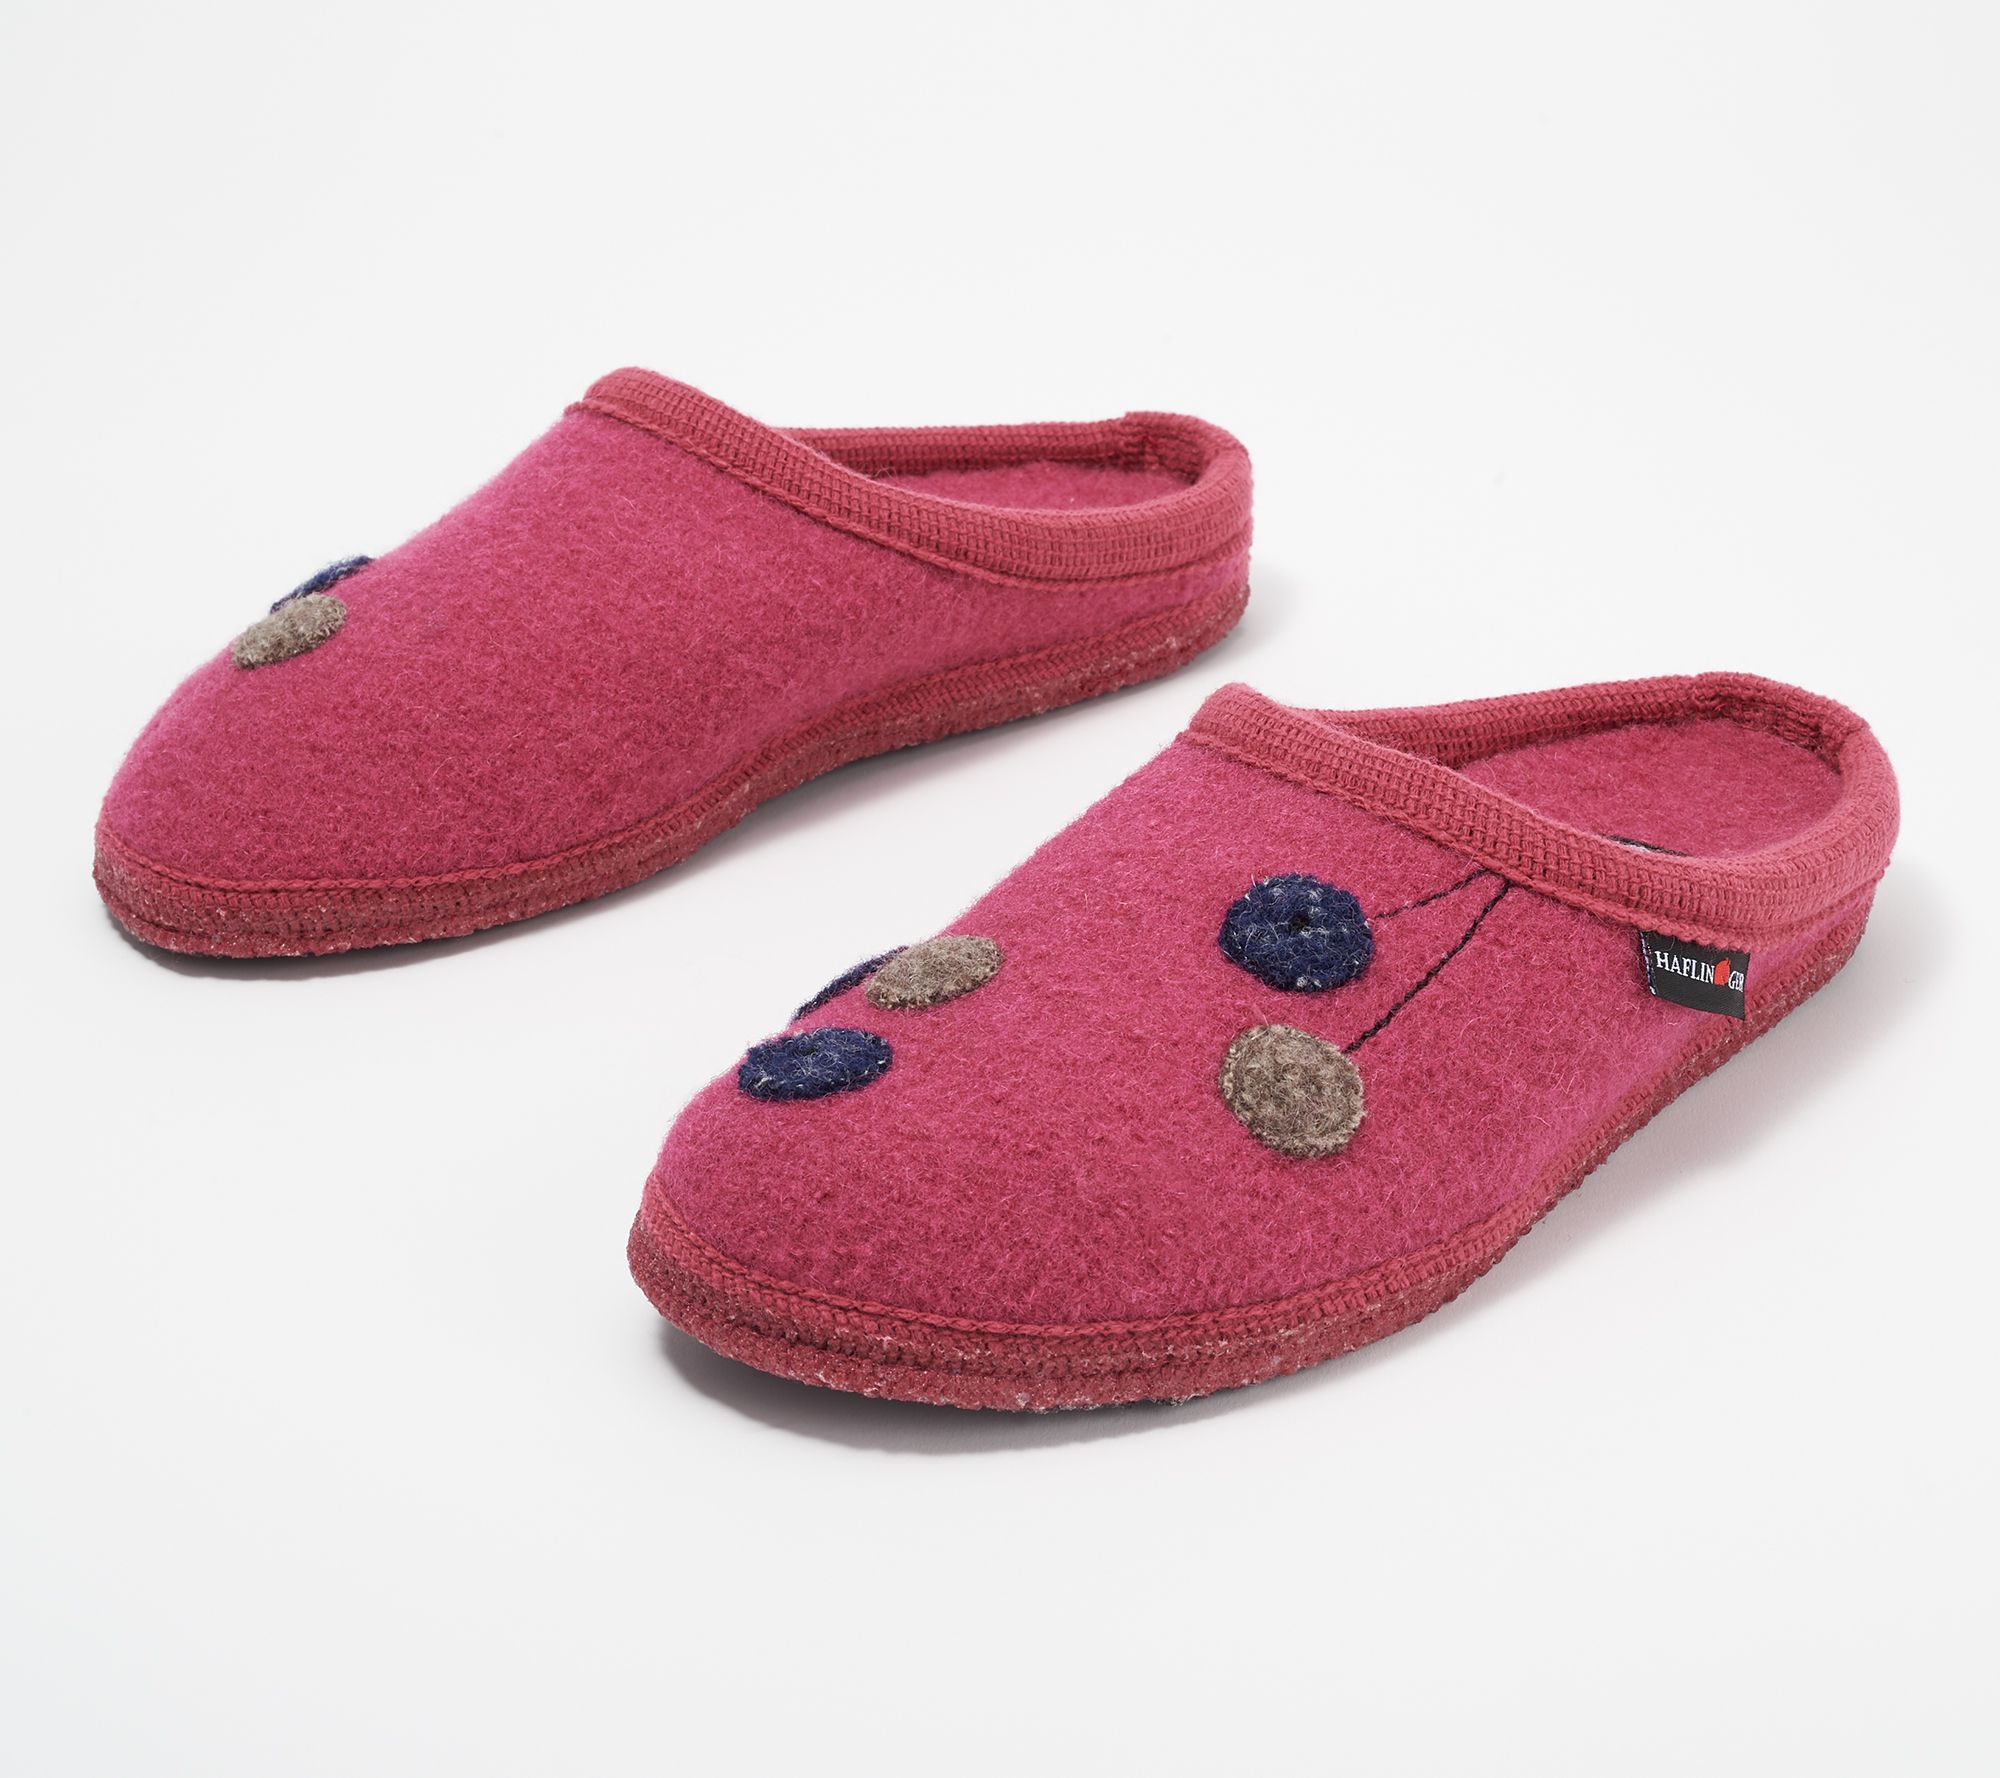 haflinger soft sole slippers women's